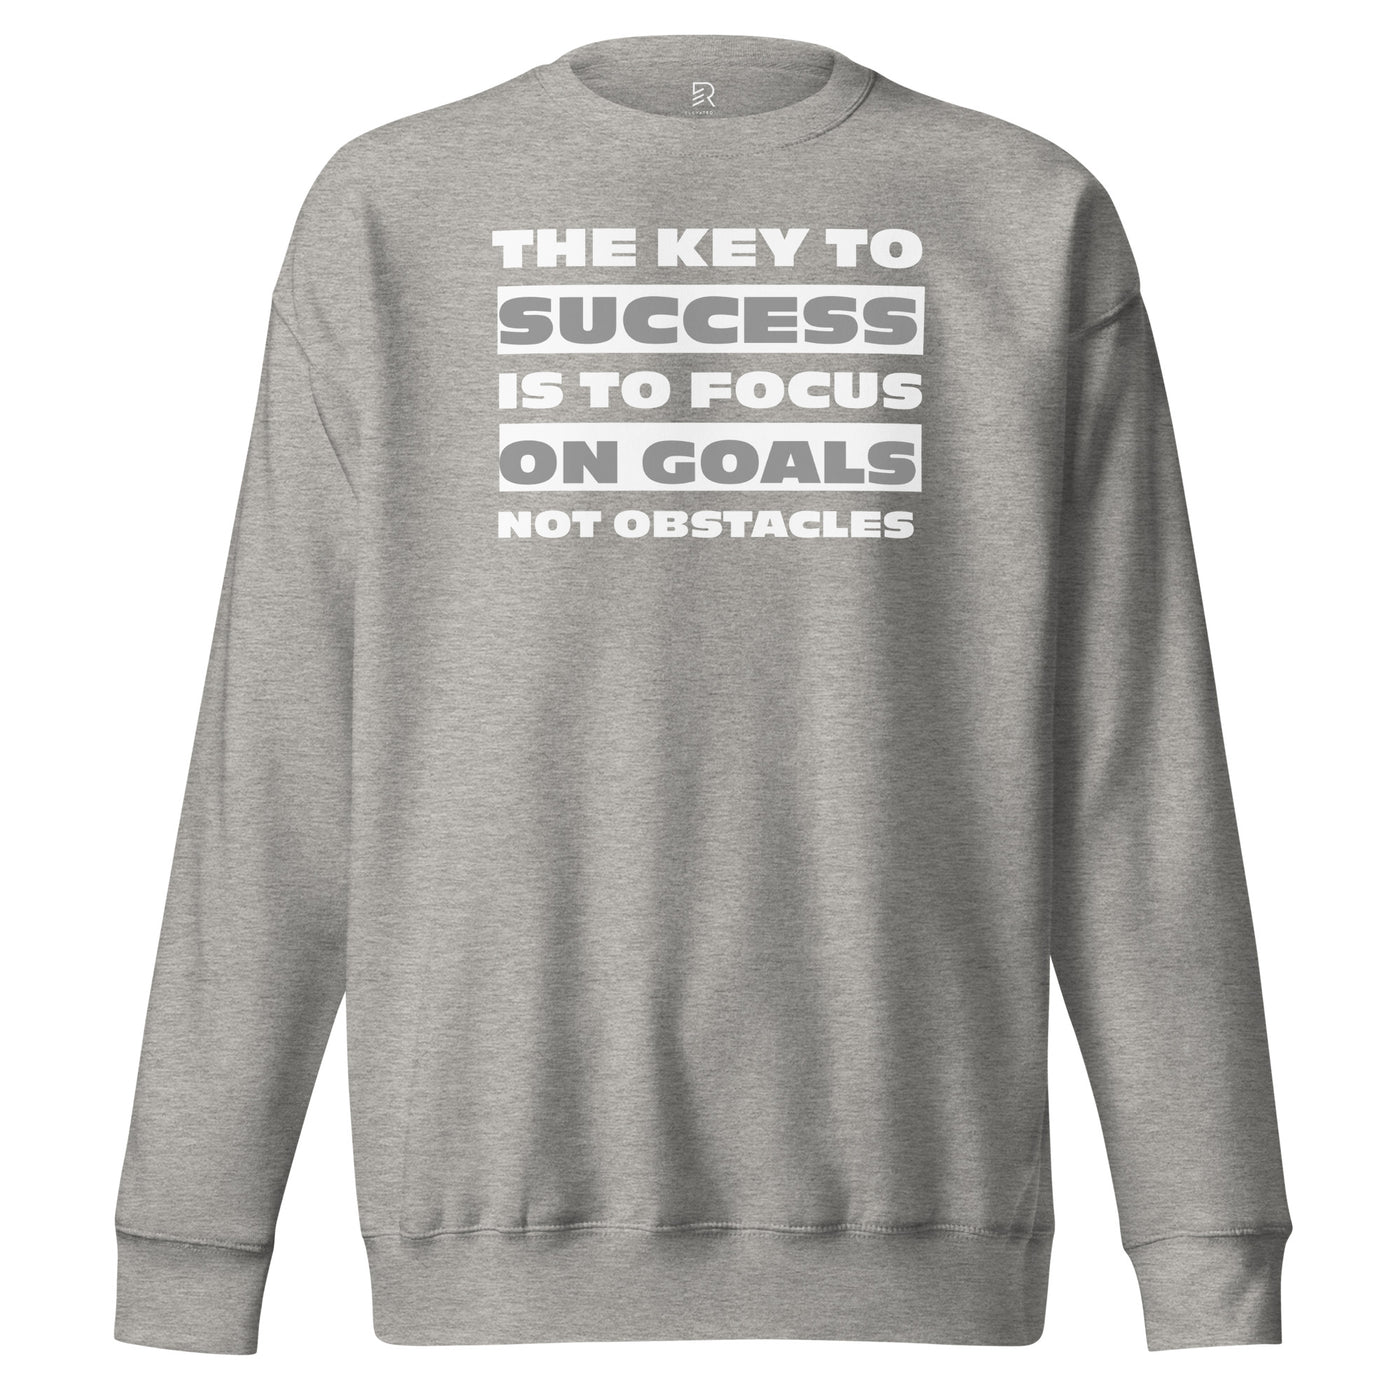 Men's Premium Gray Sweatshirt - Focus on Goals